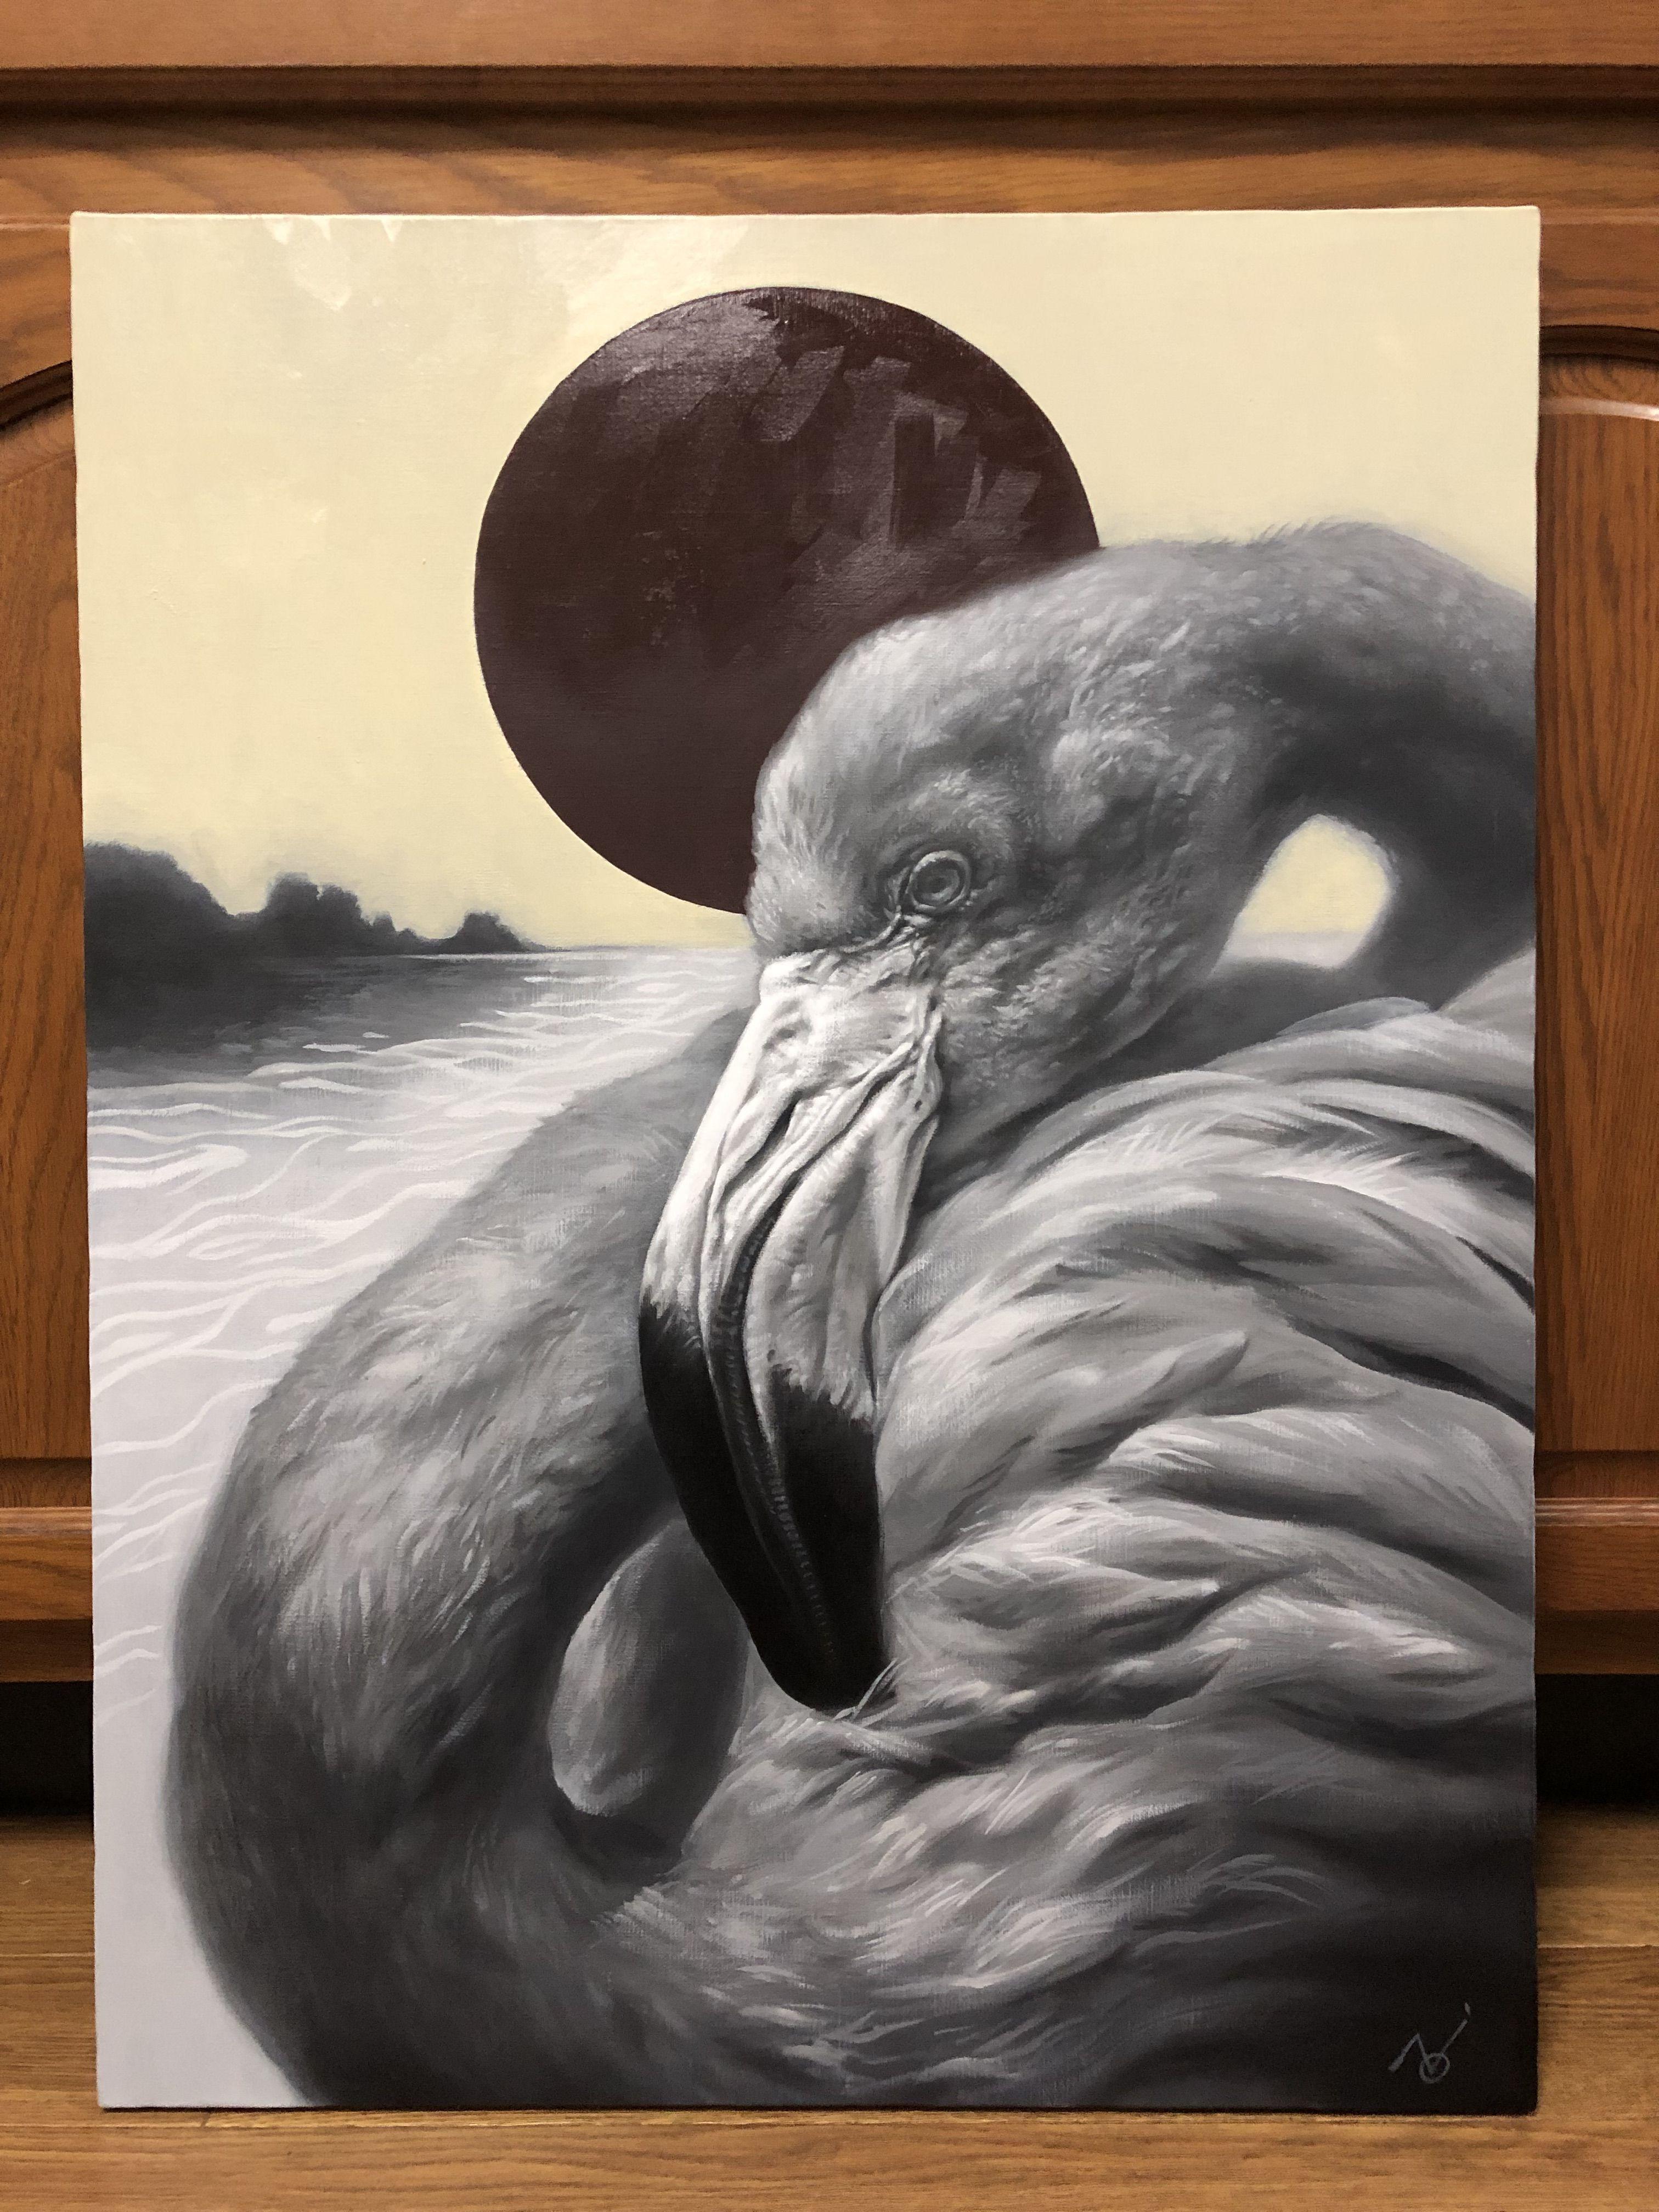 The Moment - Flamingo, peinture, huile sur toile - Réalisme Painting par Yuko Montgomery